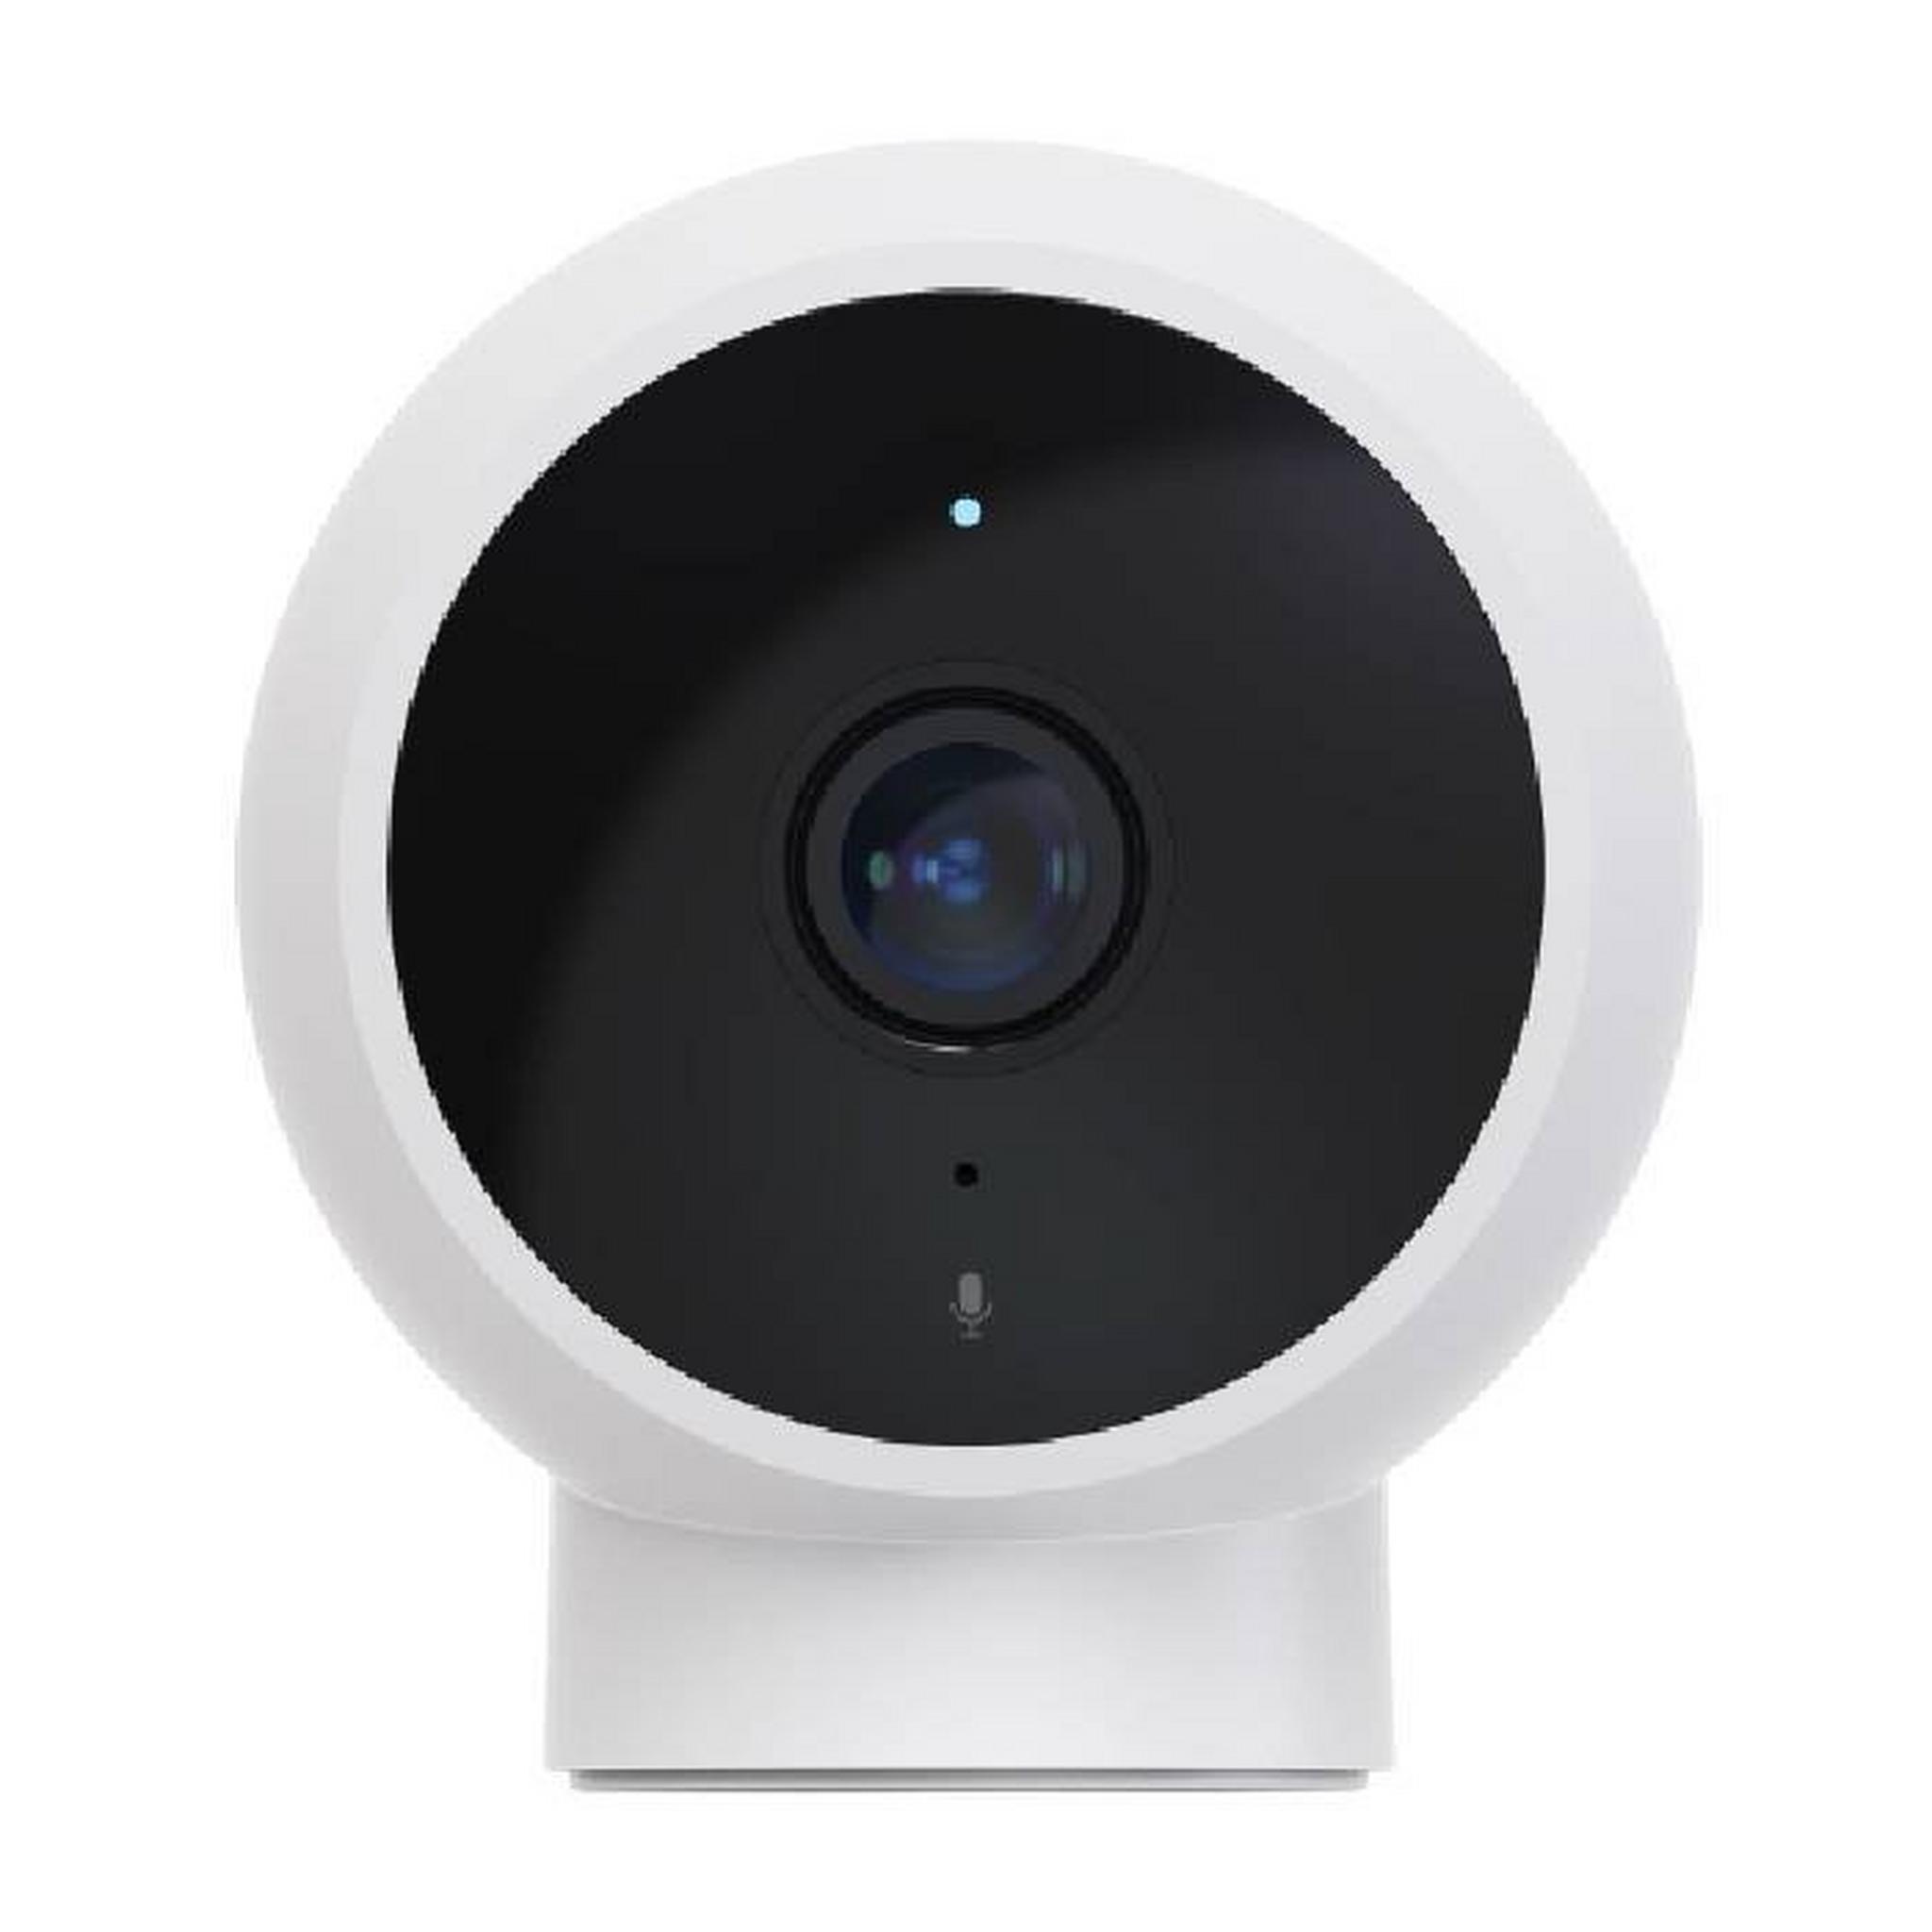 كاميرا المراقبة المنزلية شاومي مي بدقة 1080 بيكسل وحامل مغناطيسي - (QDJ4065GL)